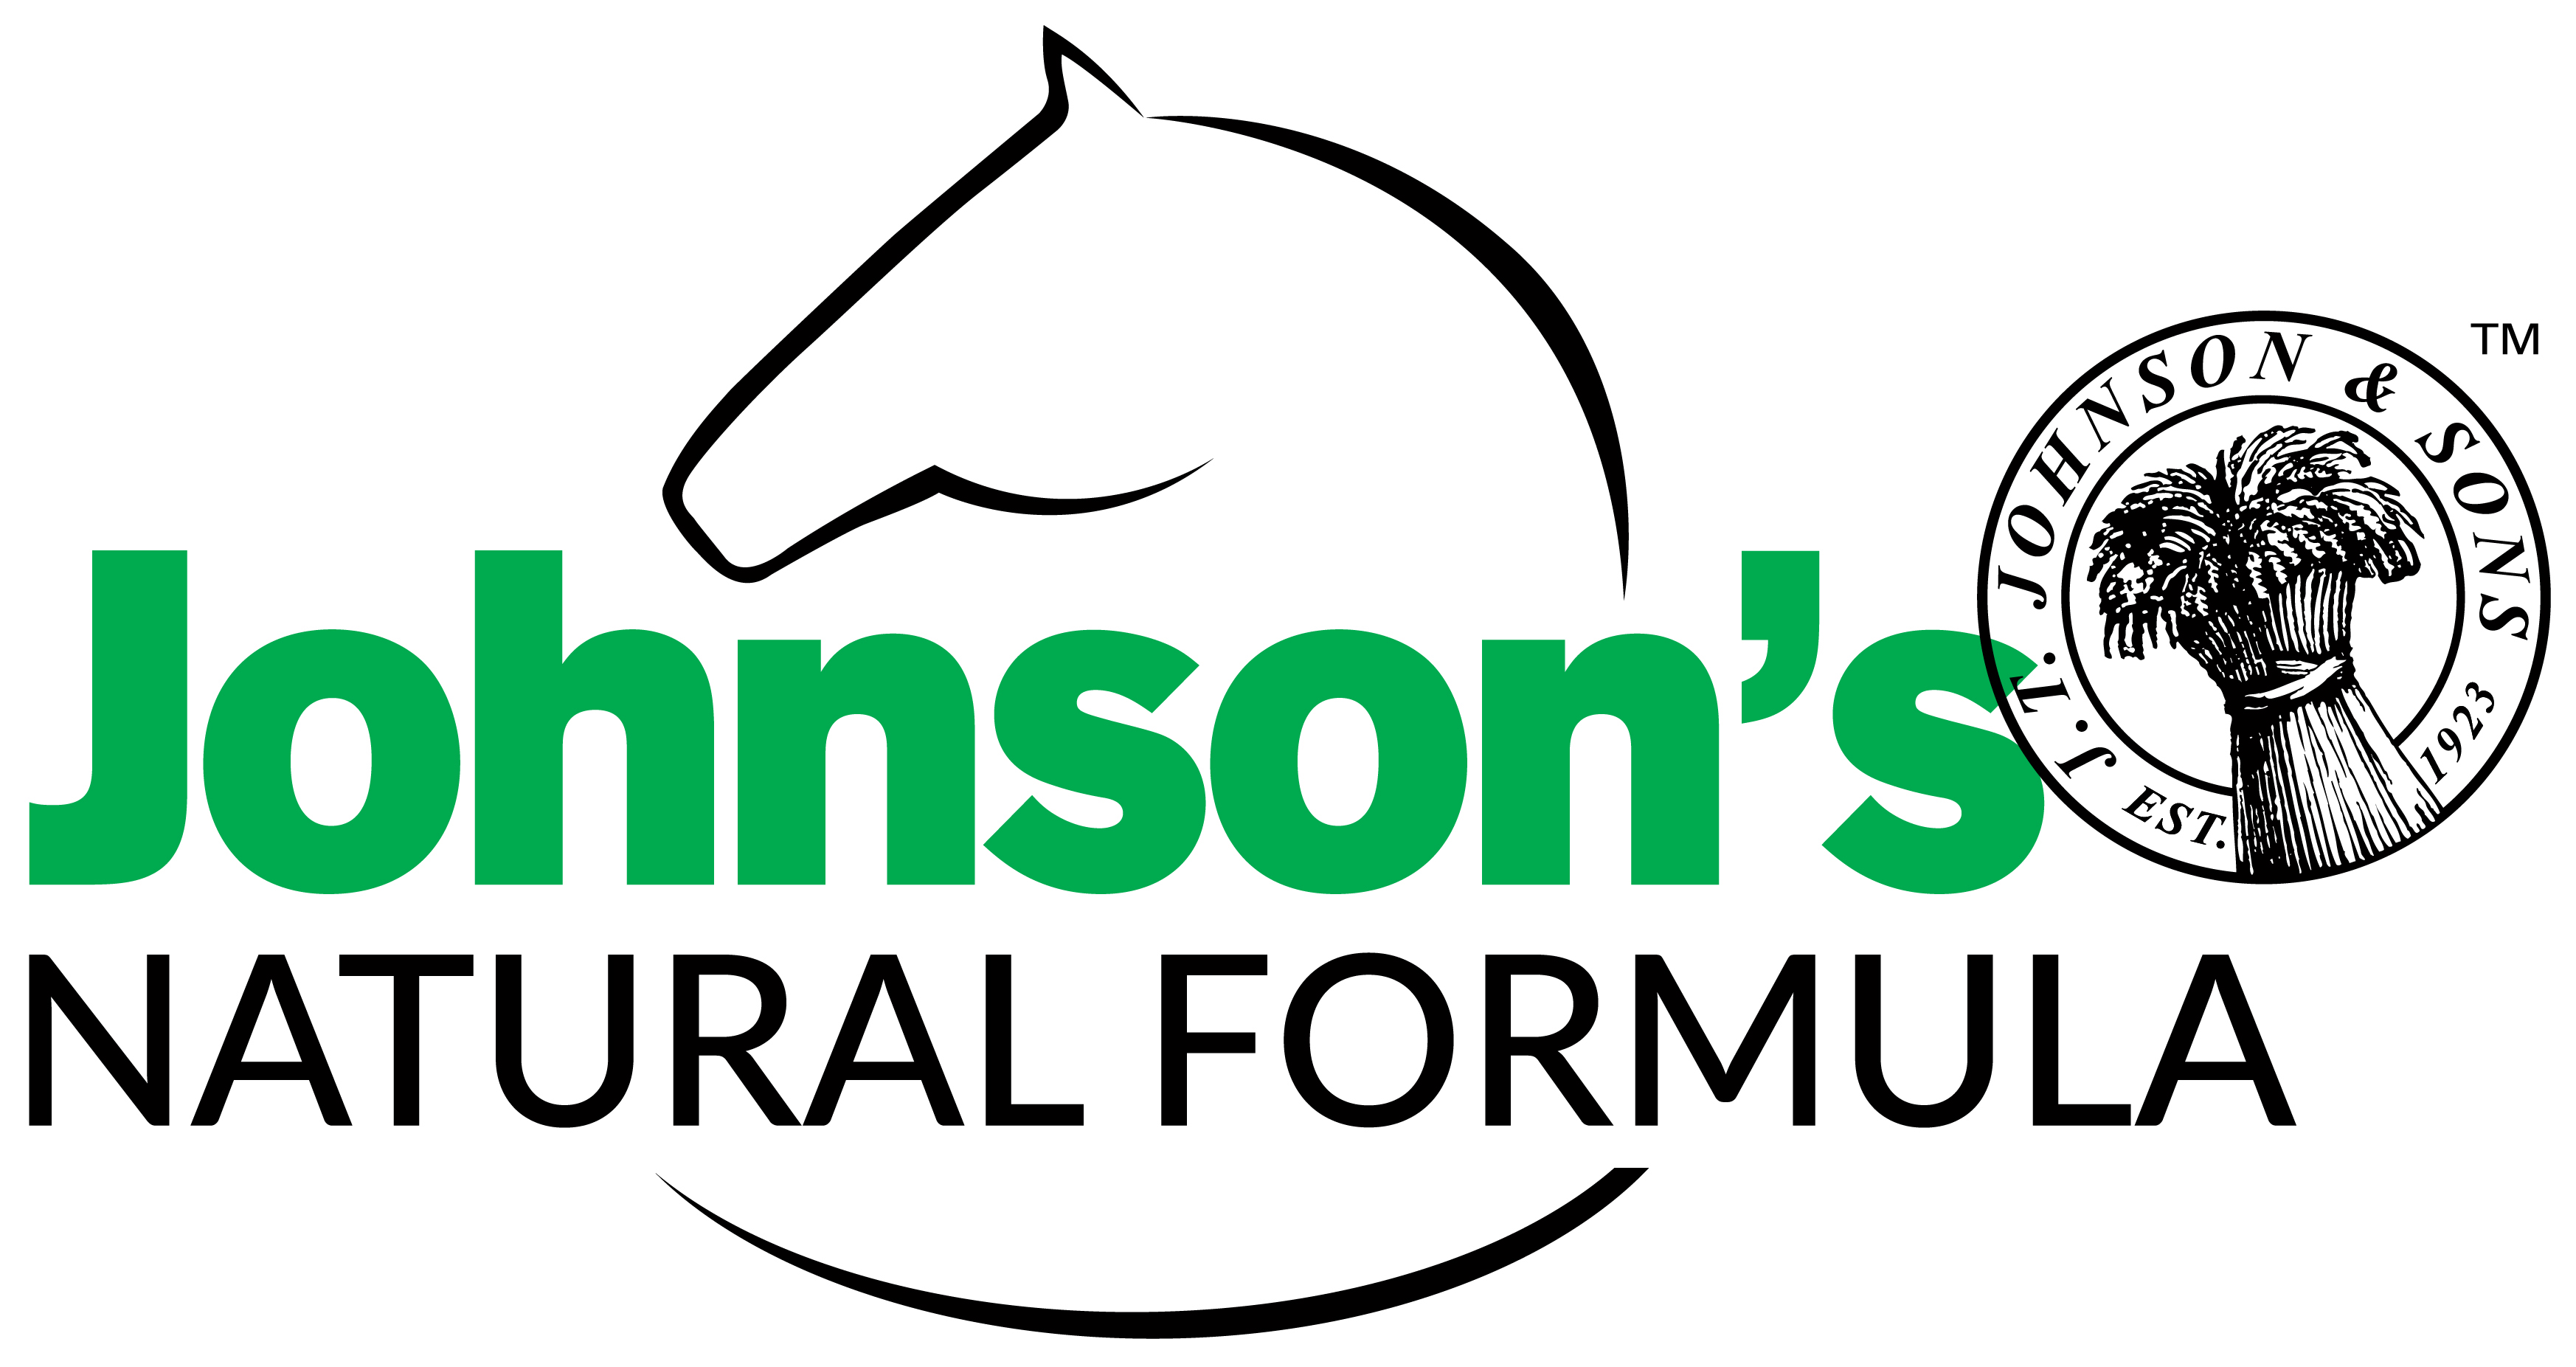 Johnson's Natural Formula